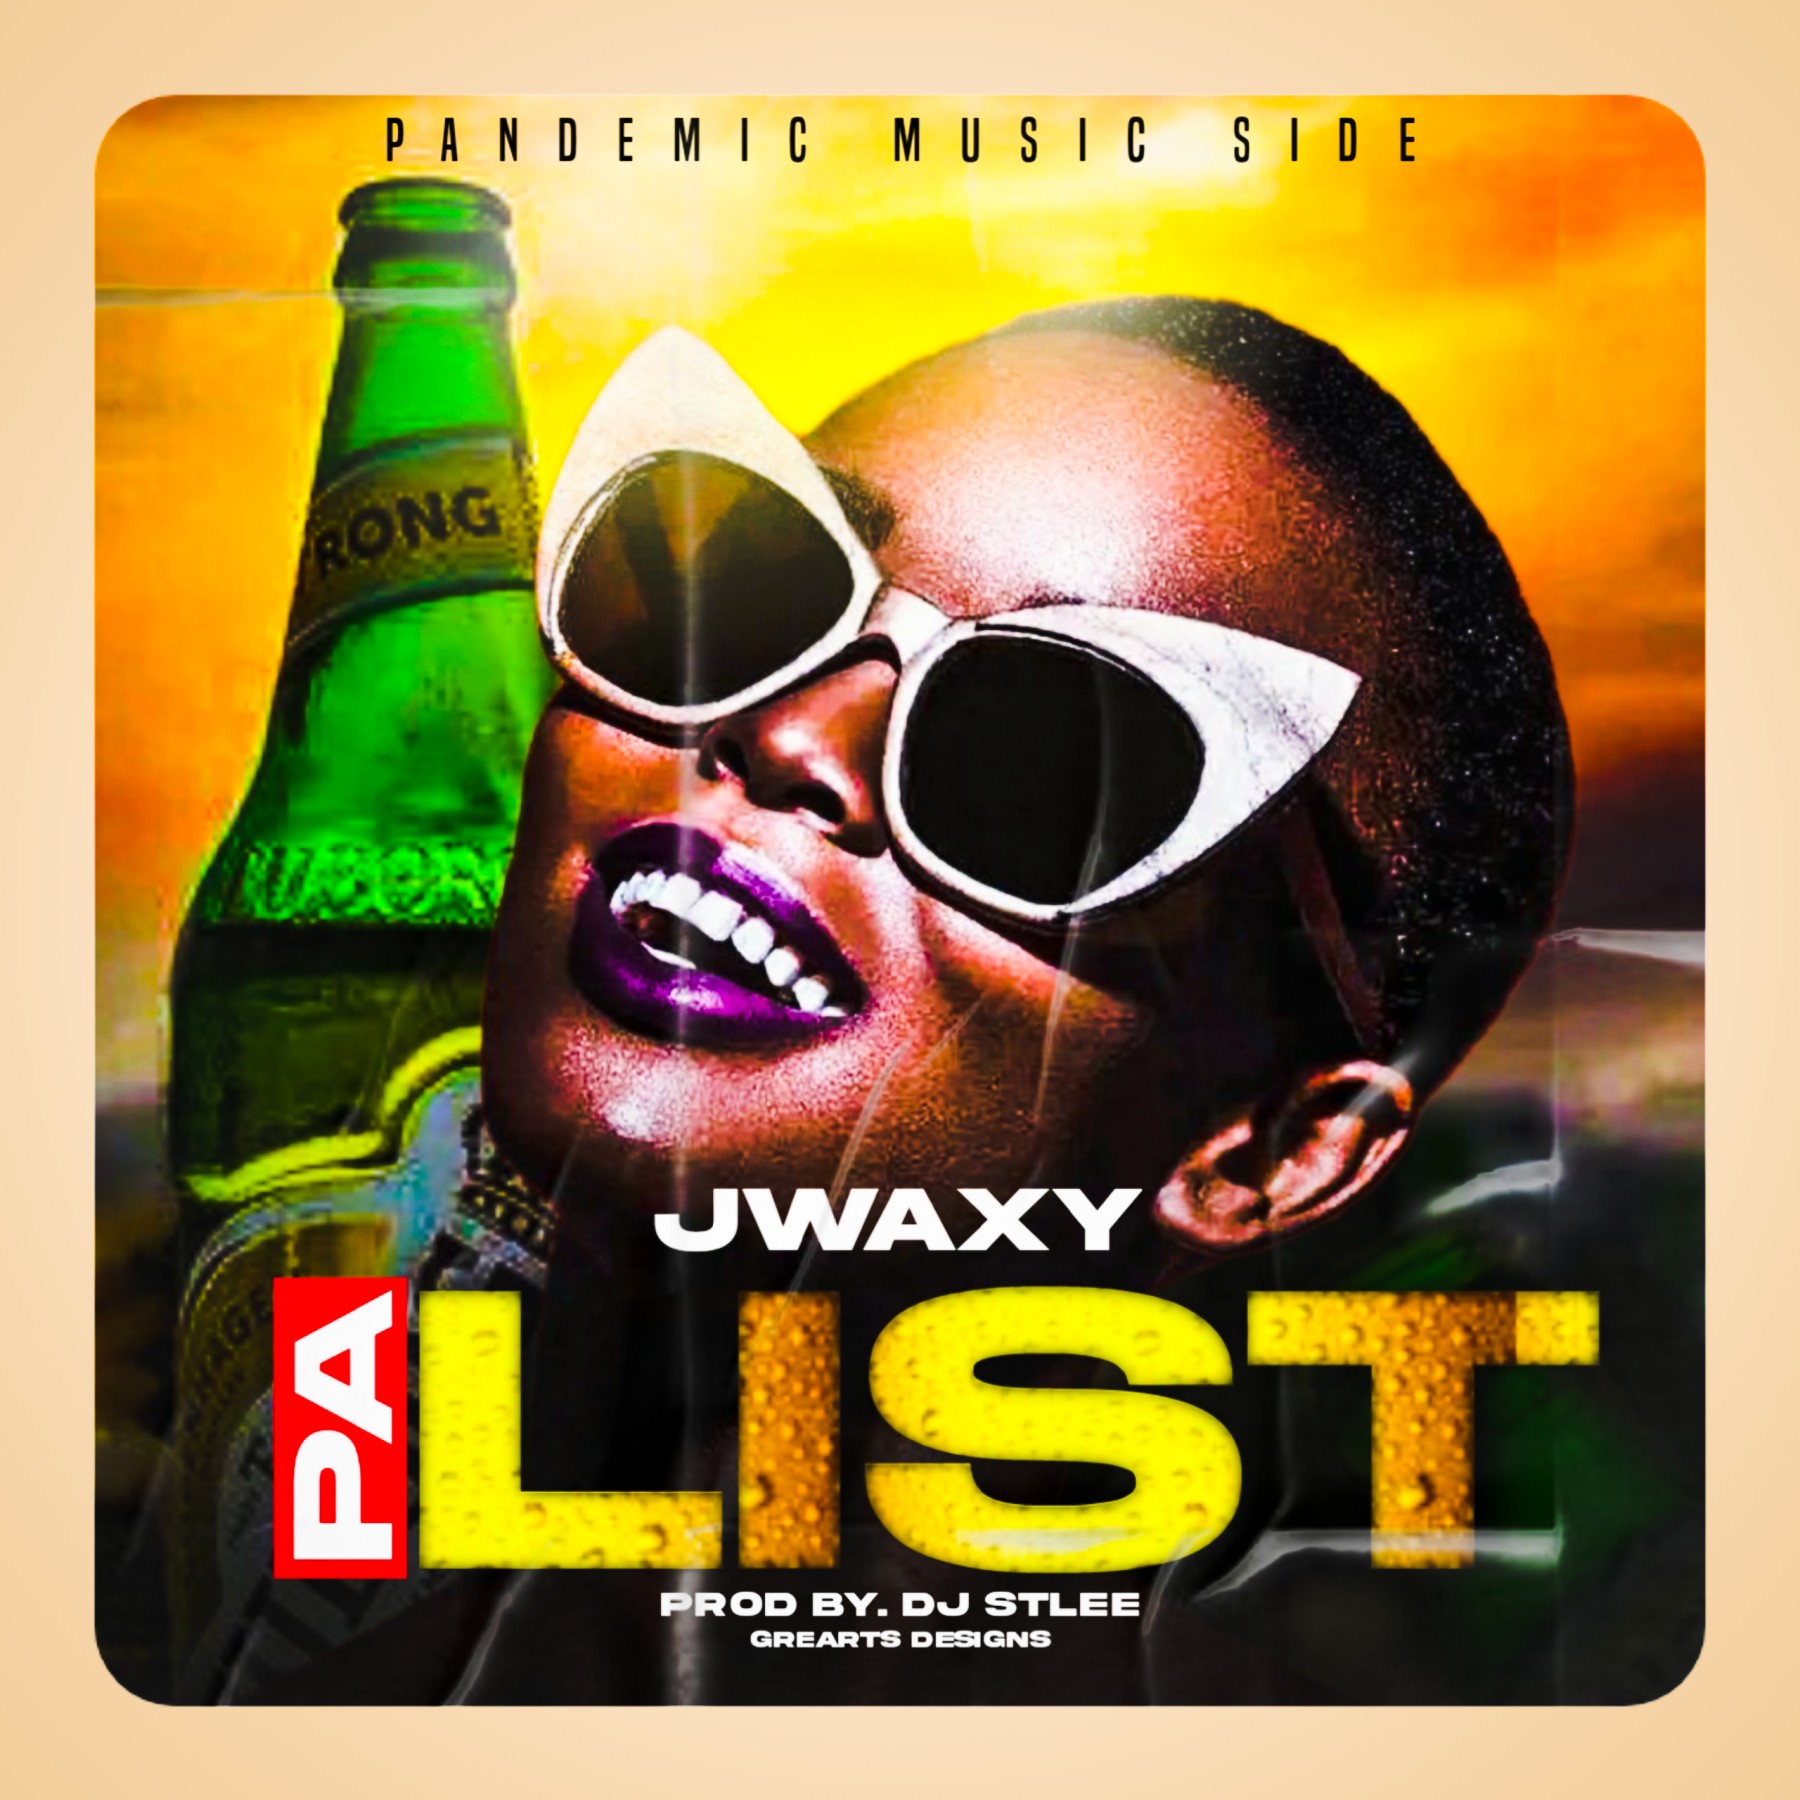 Jwaxy-Pa_List-Prod-By-DjStylee